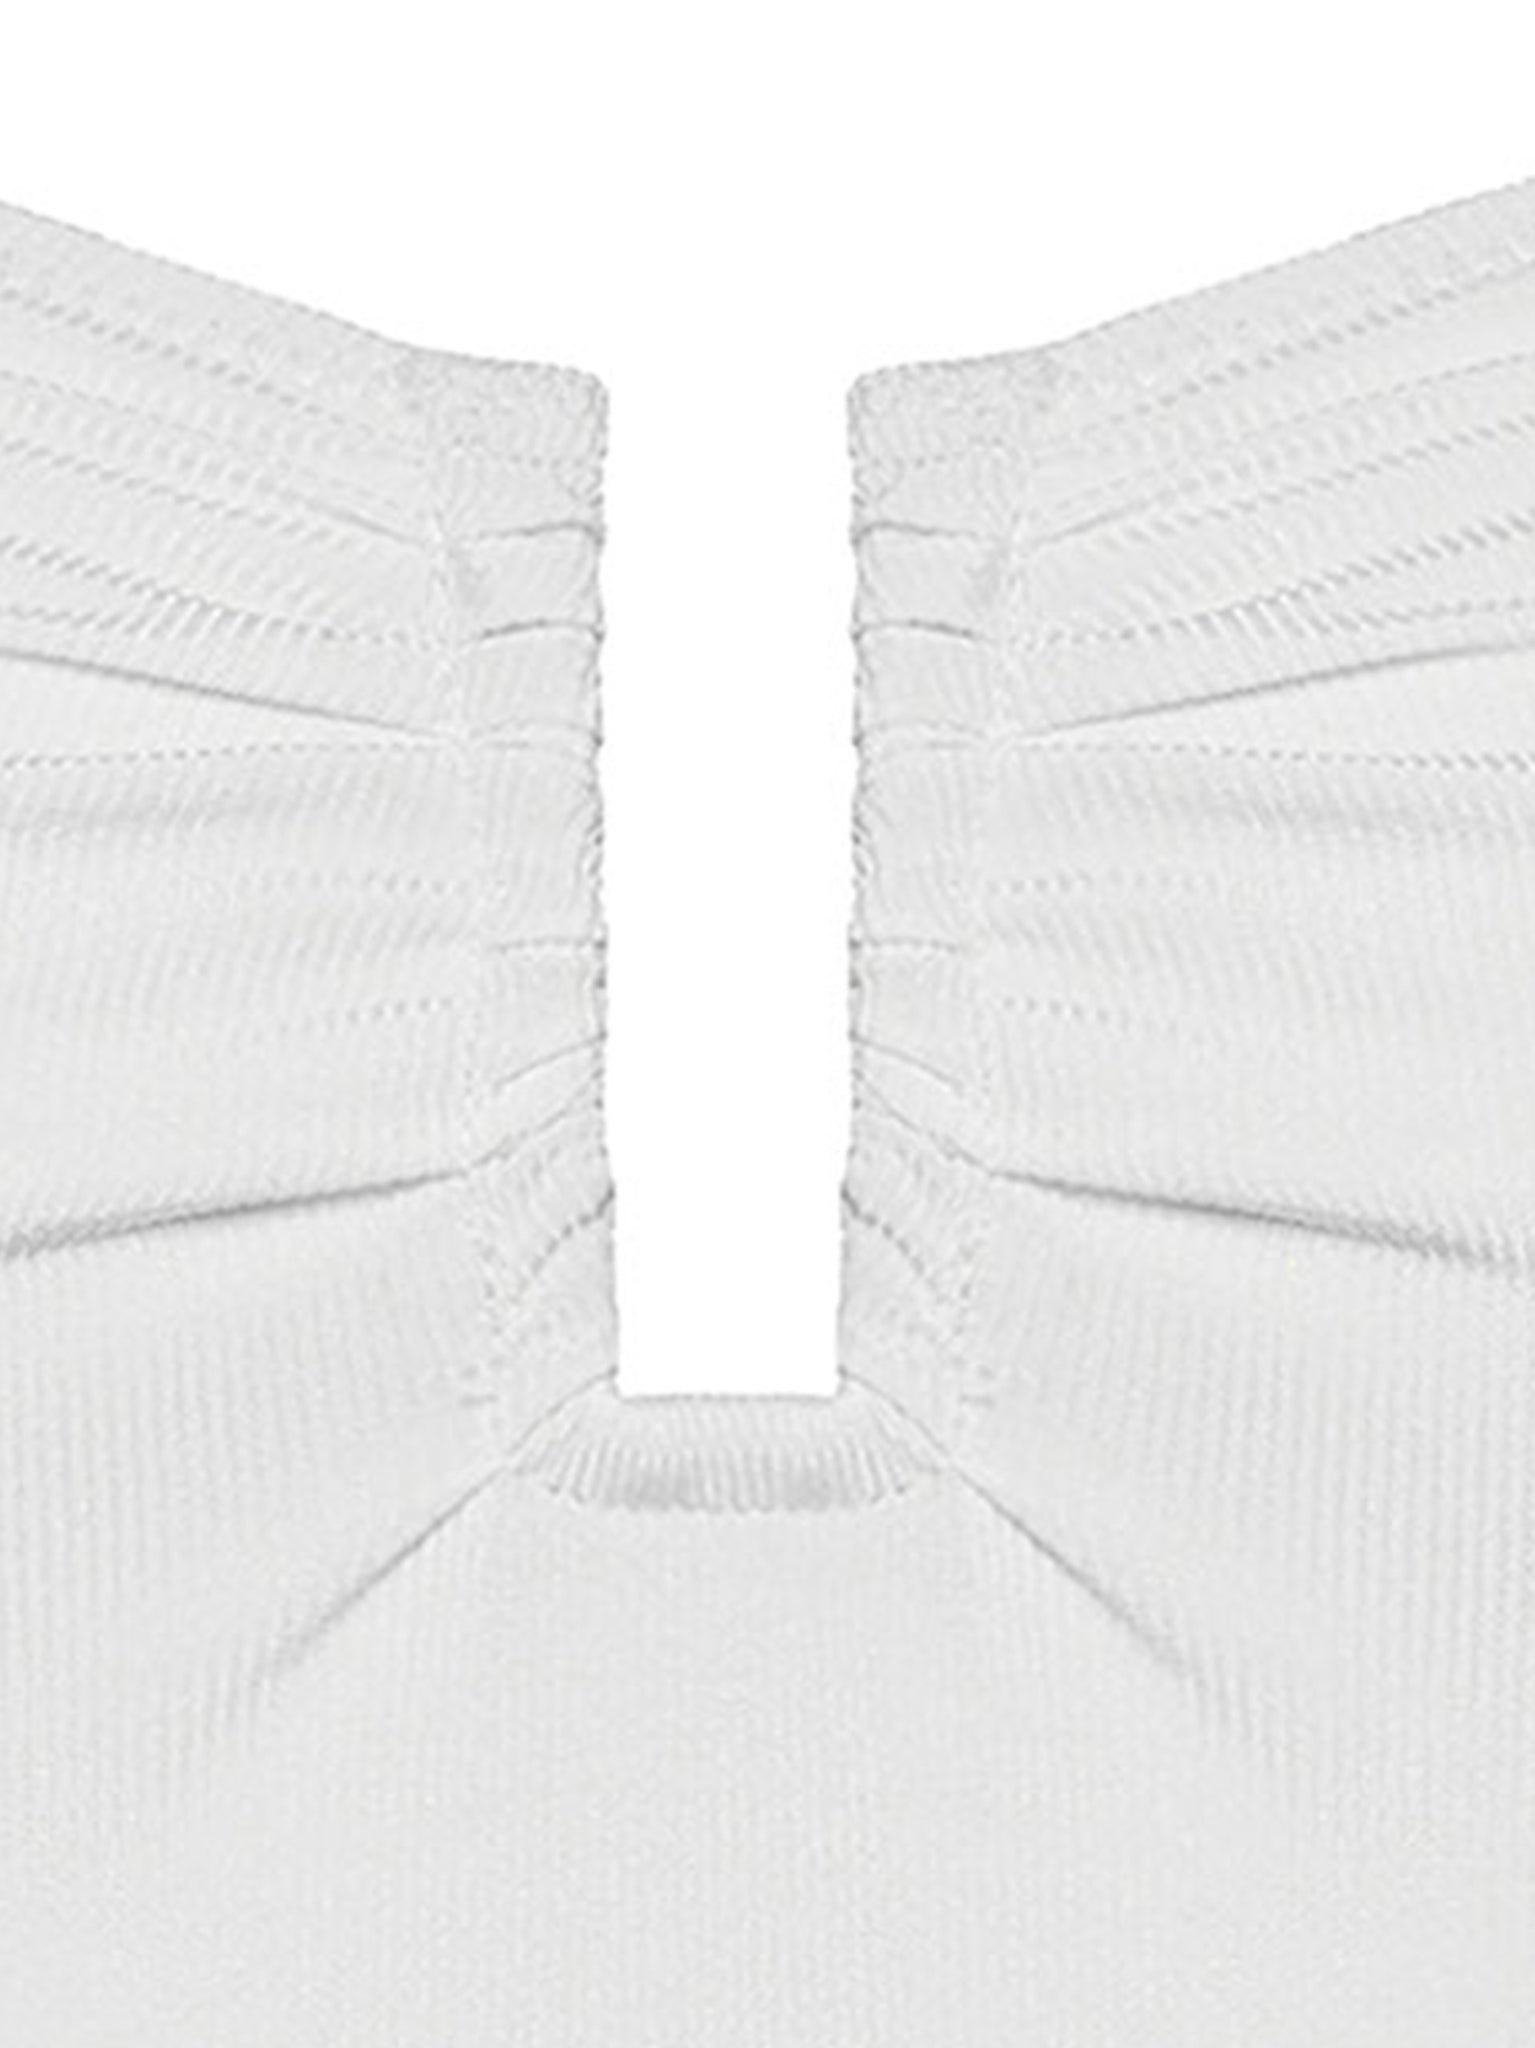 Marni swimsuit in Bianco